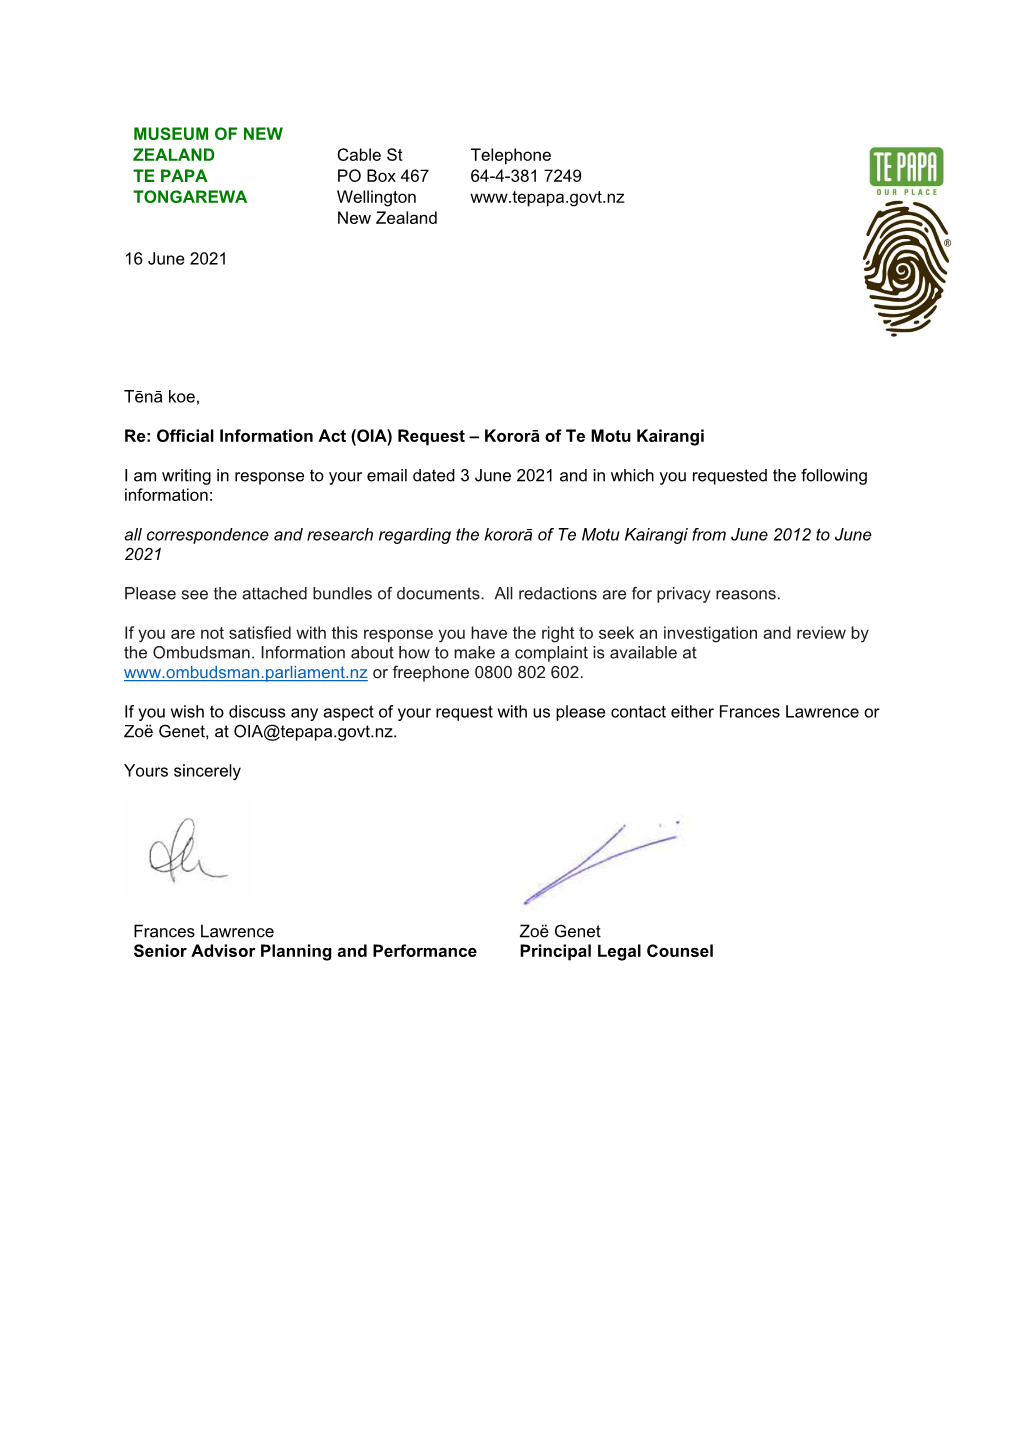 Response to OIA Request Kororā of Te Motu Kairangi 16 Jun 2021